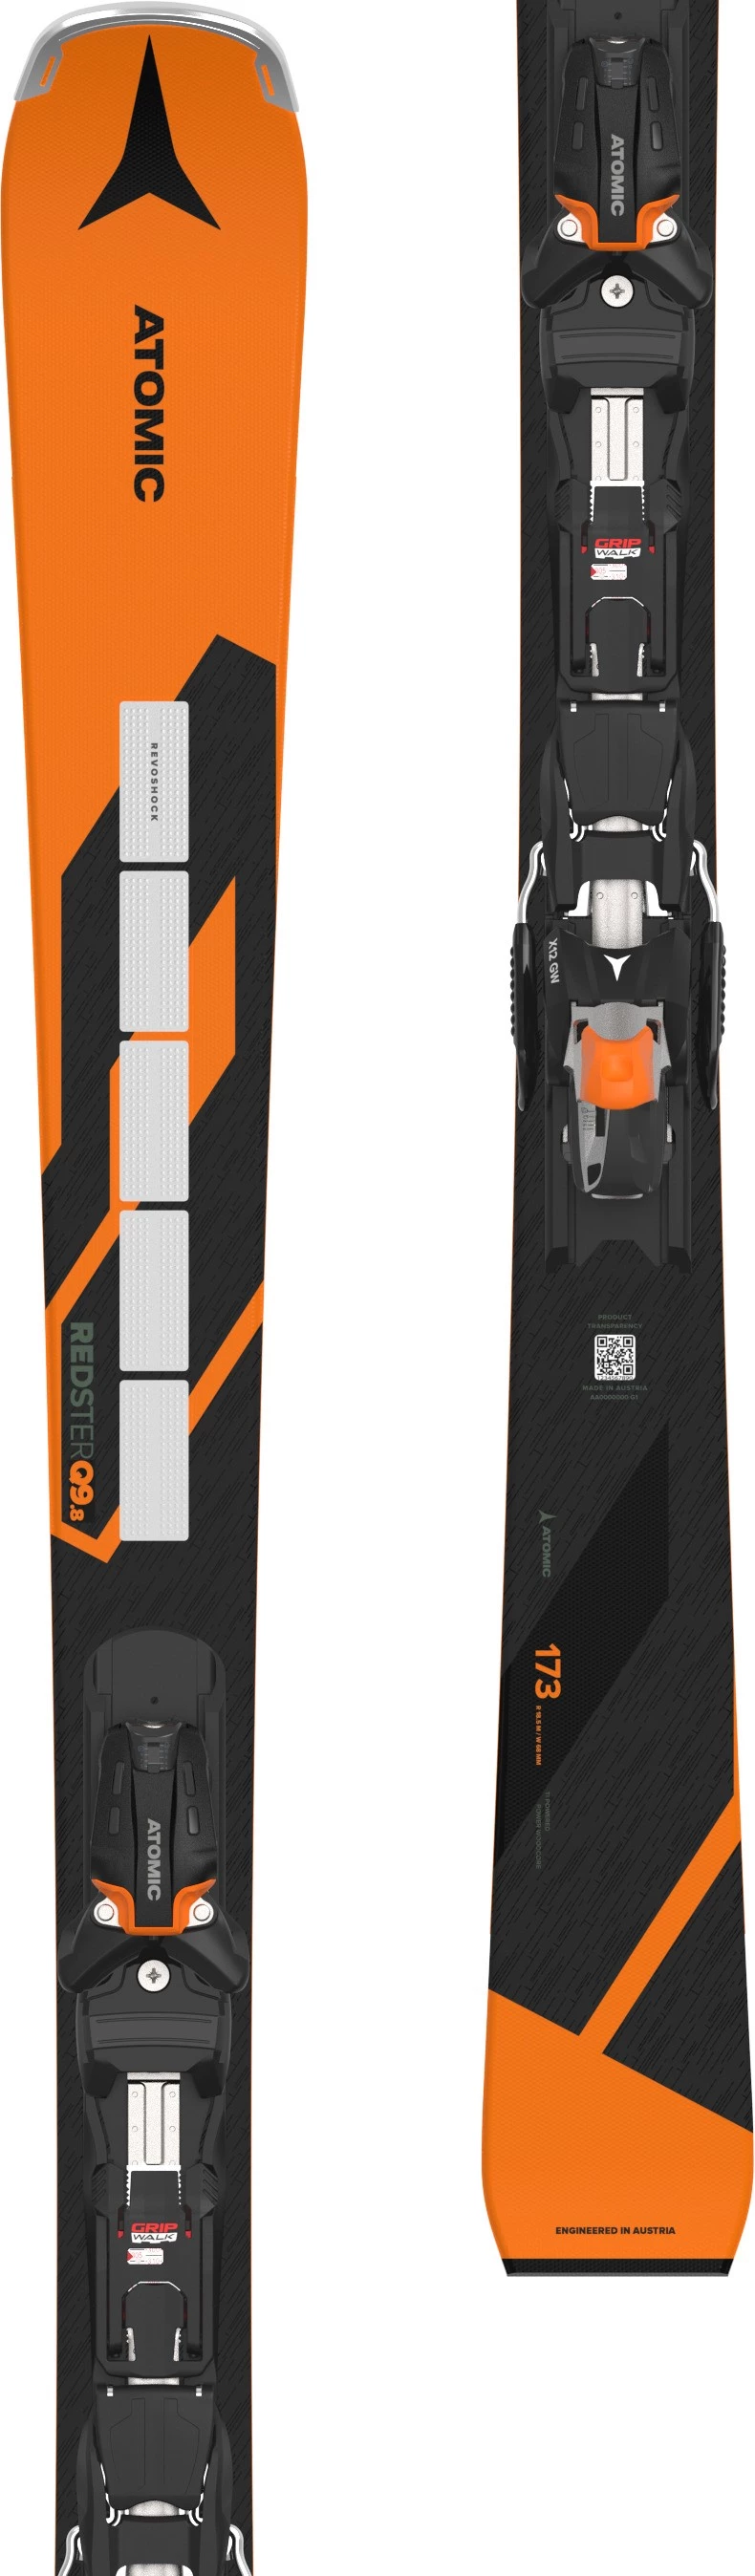 Skis Atomic Redster Q9.8 Revoshock + binding X 12 GW